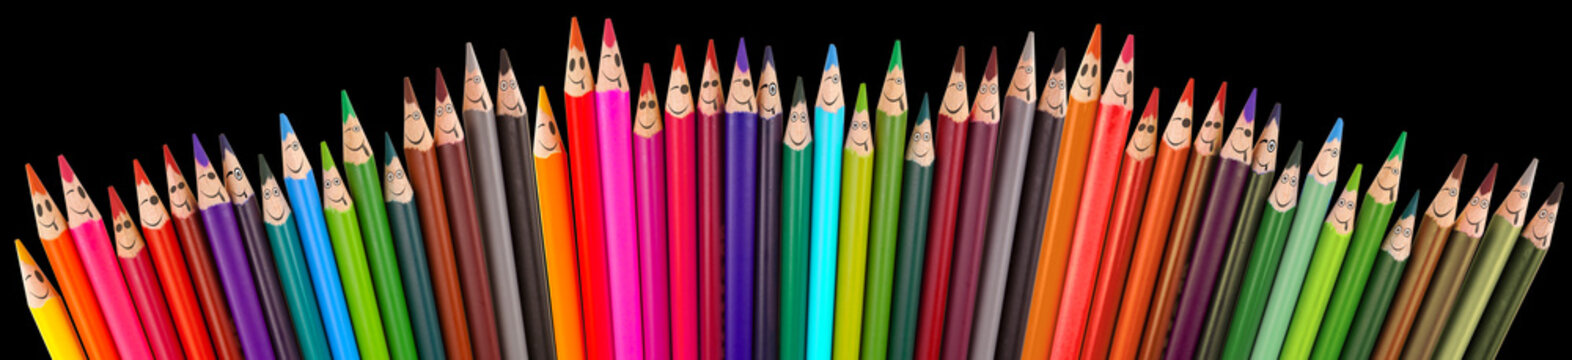 Crayons souriants sur fond noir, concept rentrée scolaire